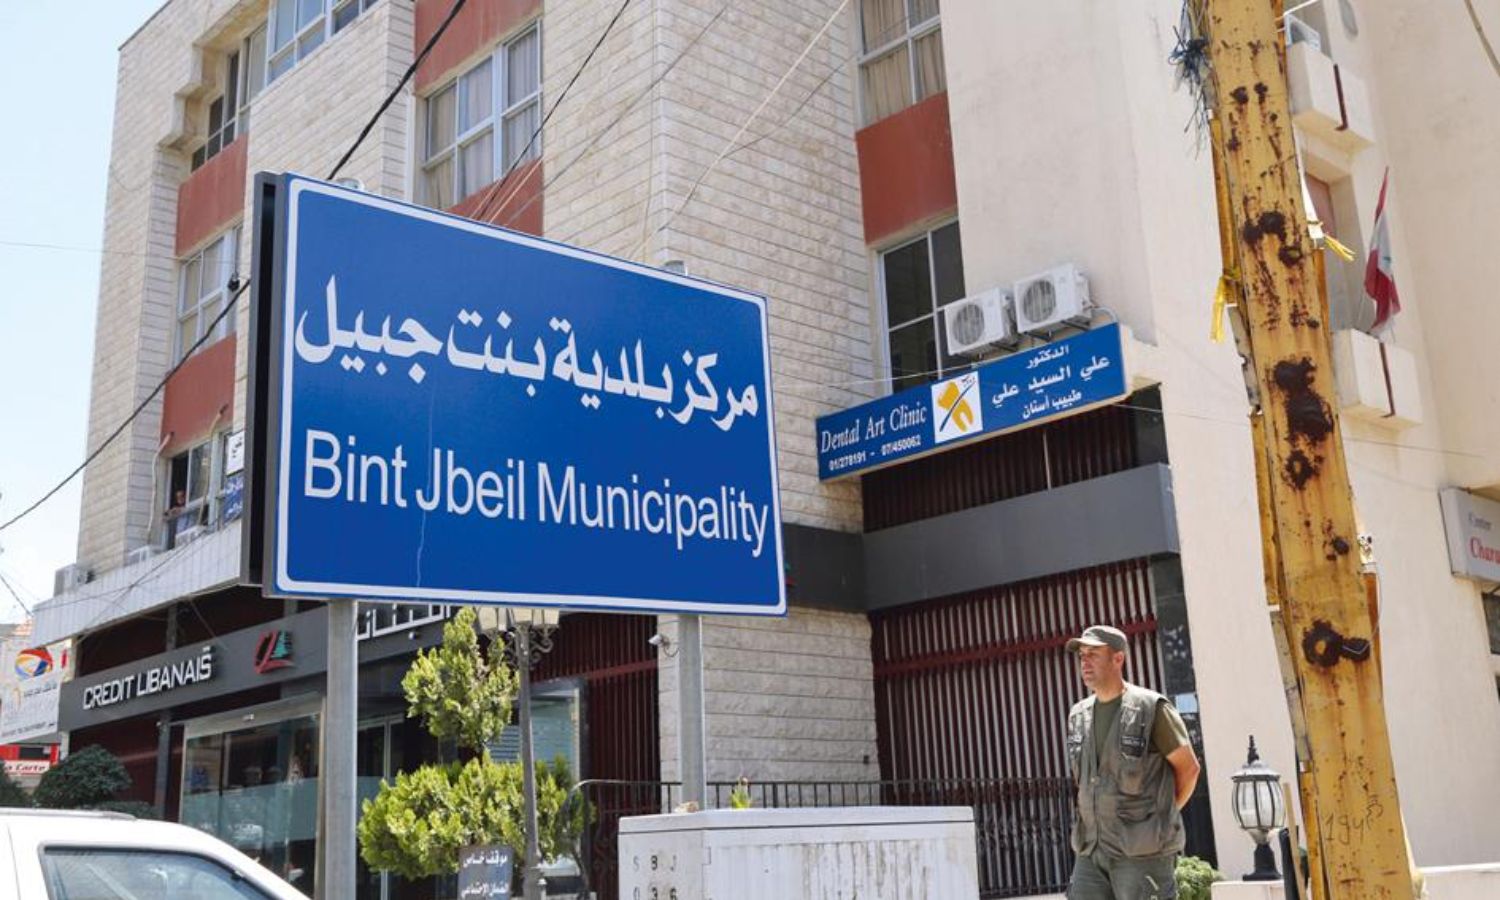 لافتة مكتوب عليها مركز بلدية بنت جبيل (المنار)